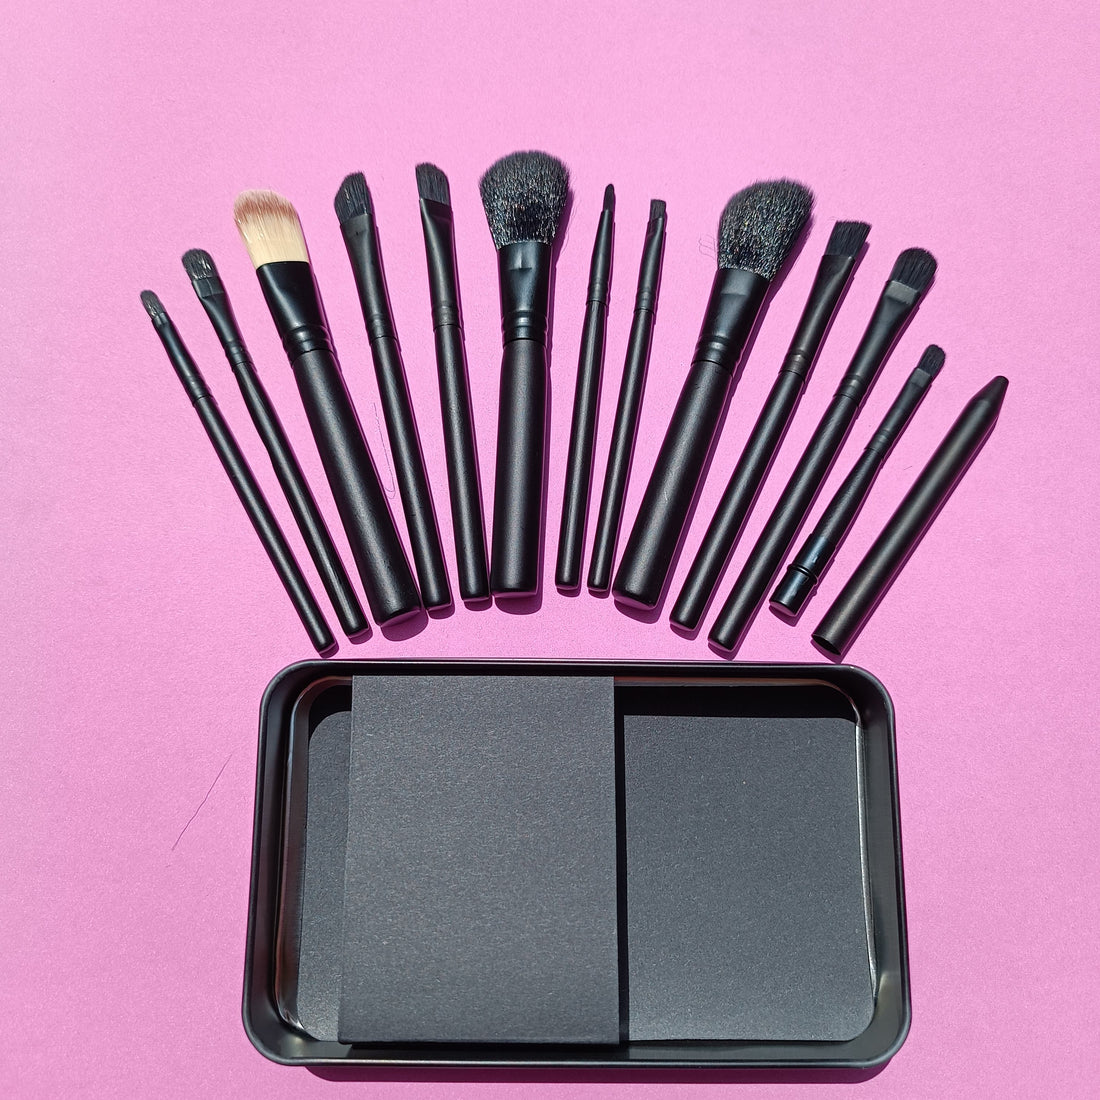 Makeup brushes set 12pcs with box